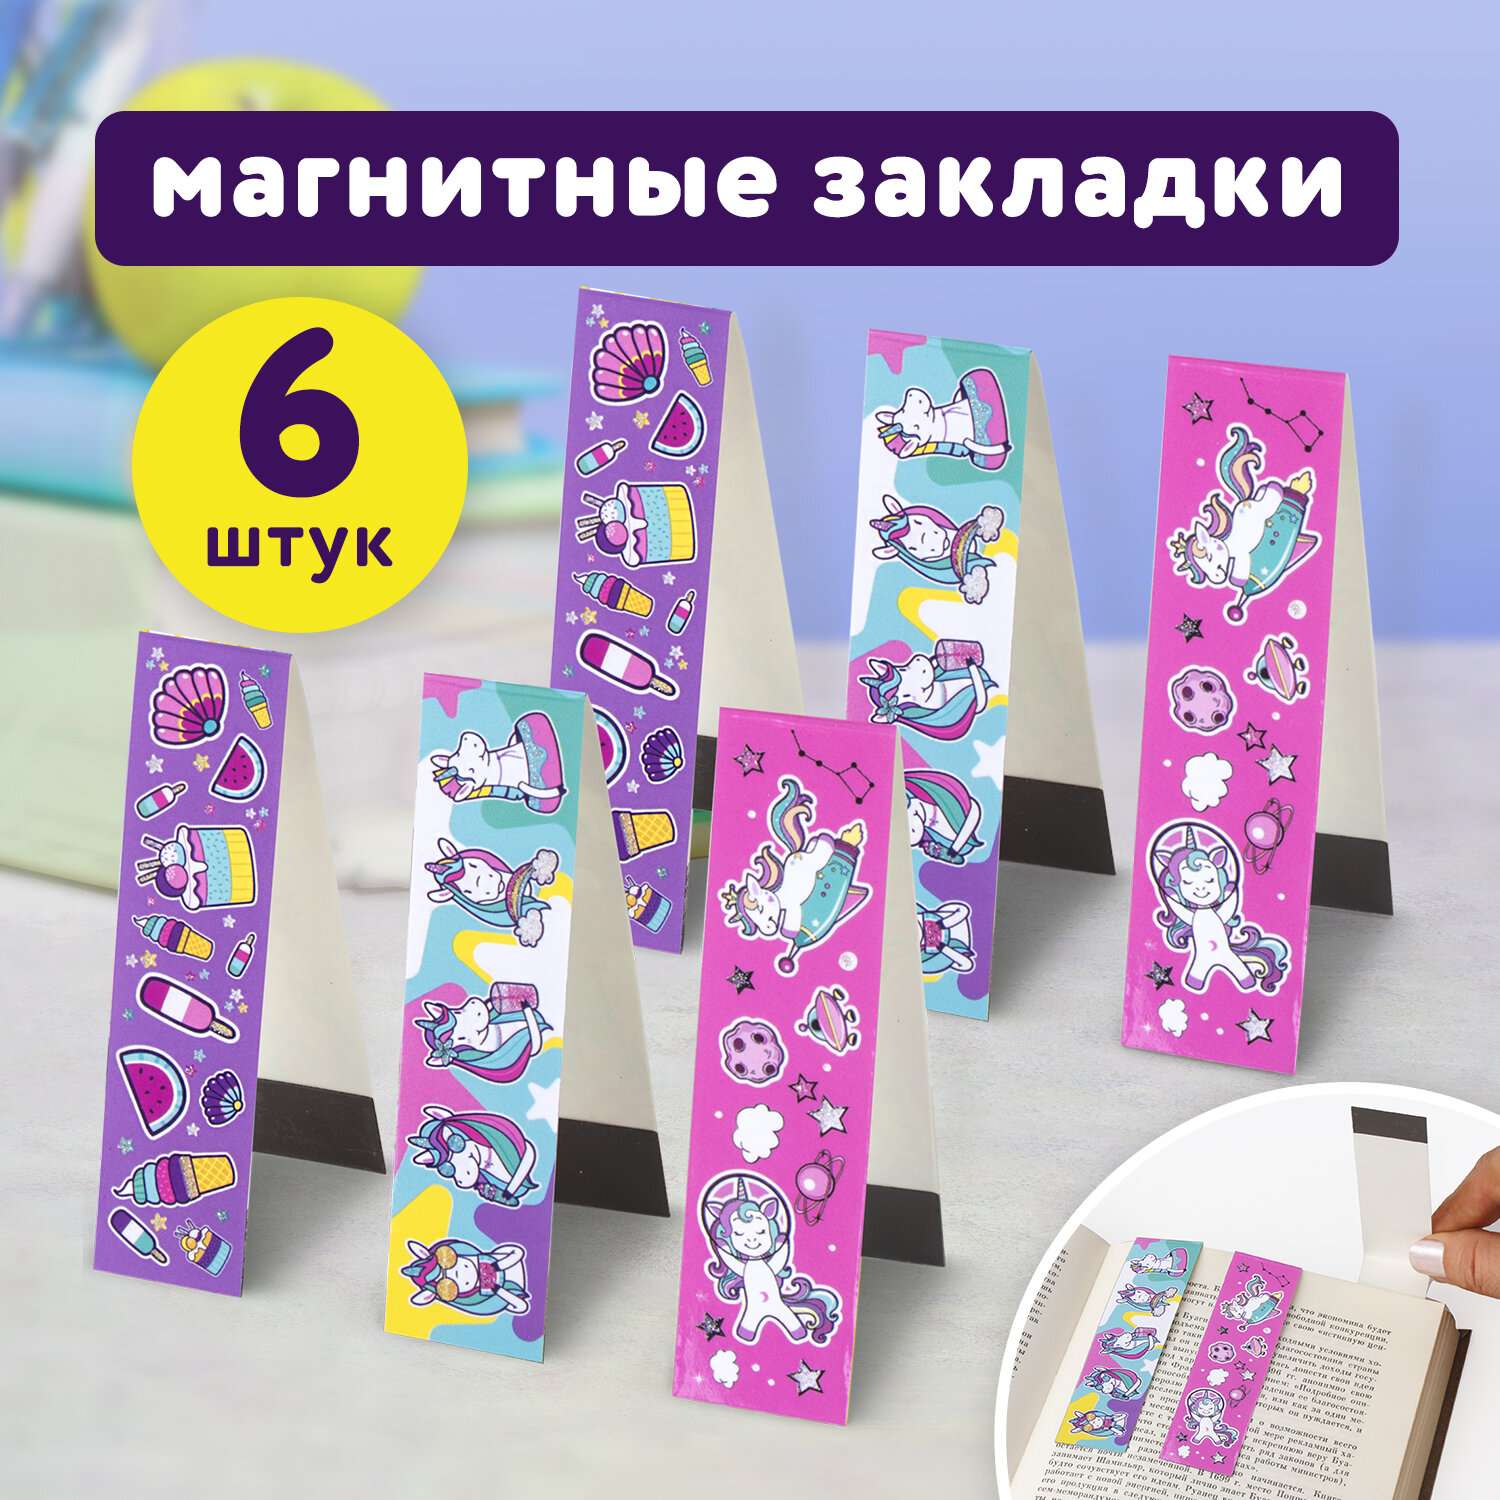 Гравюра: купить гравюры для детского творчества в интернет-магазине в Минске